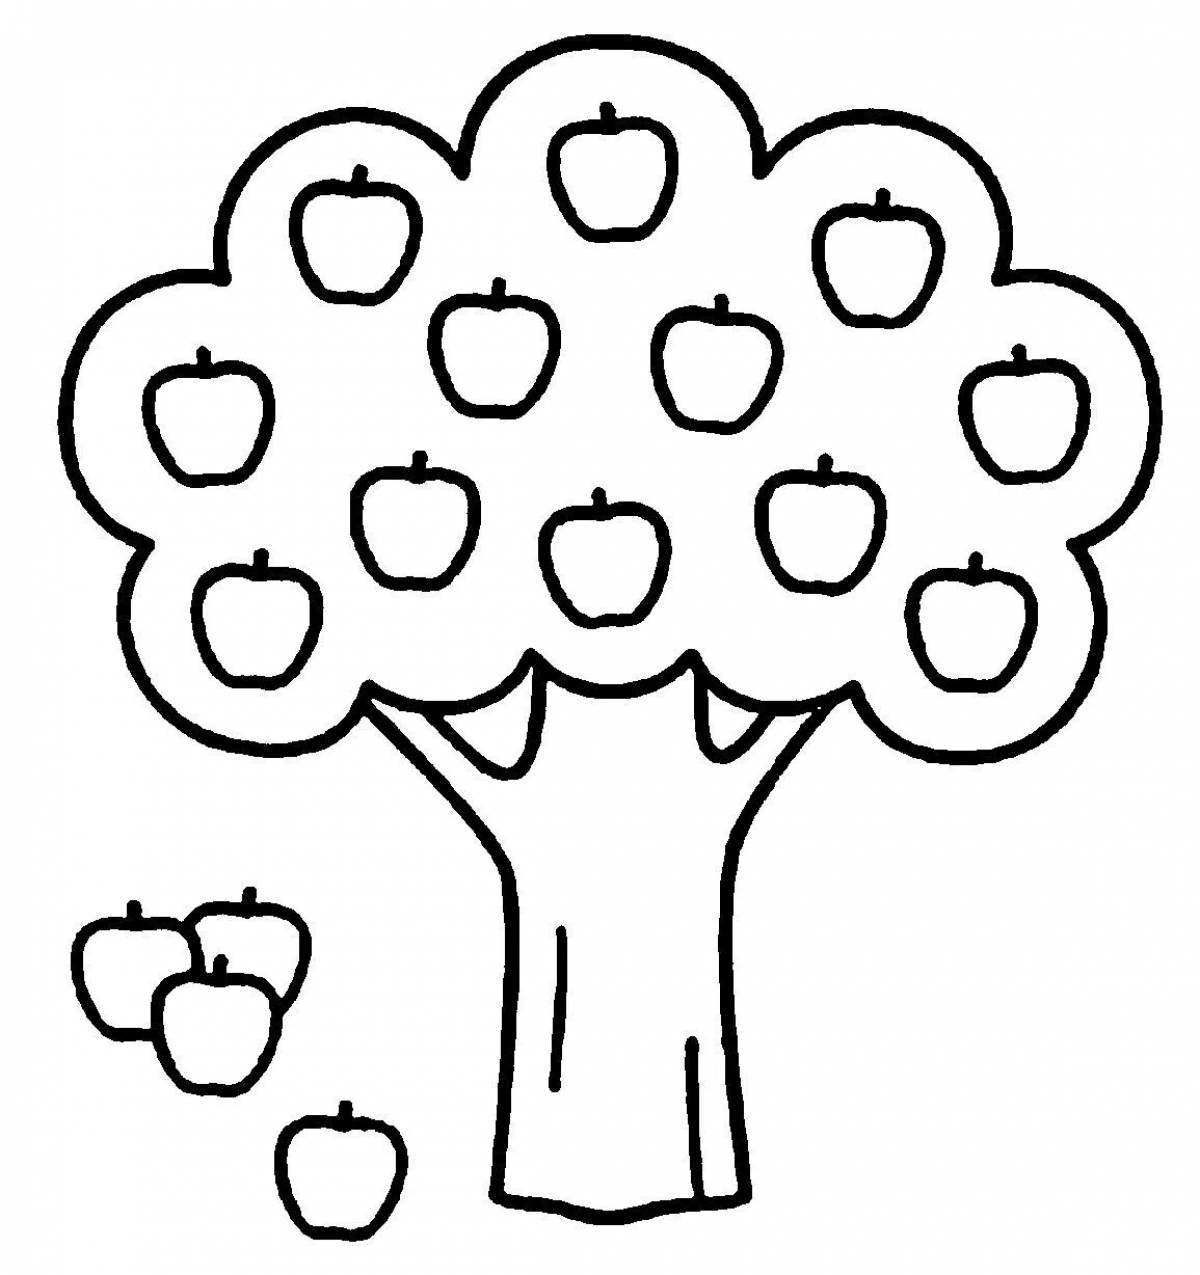 Fertile apple tree for preschoolers